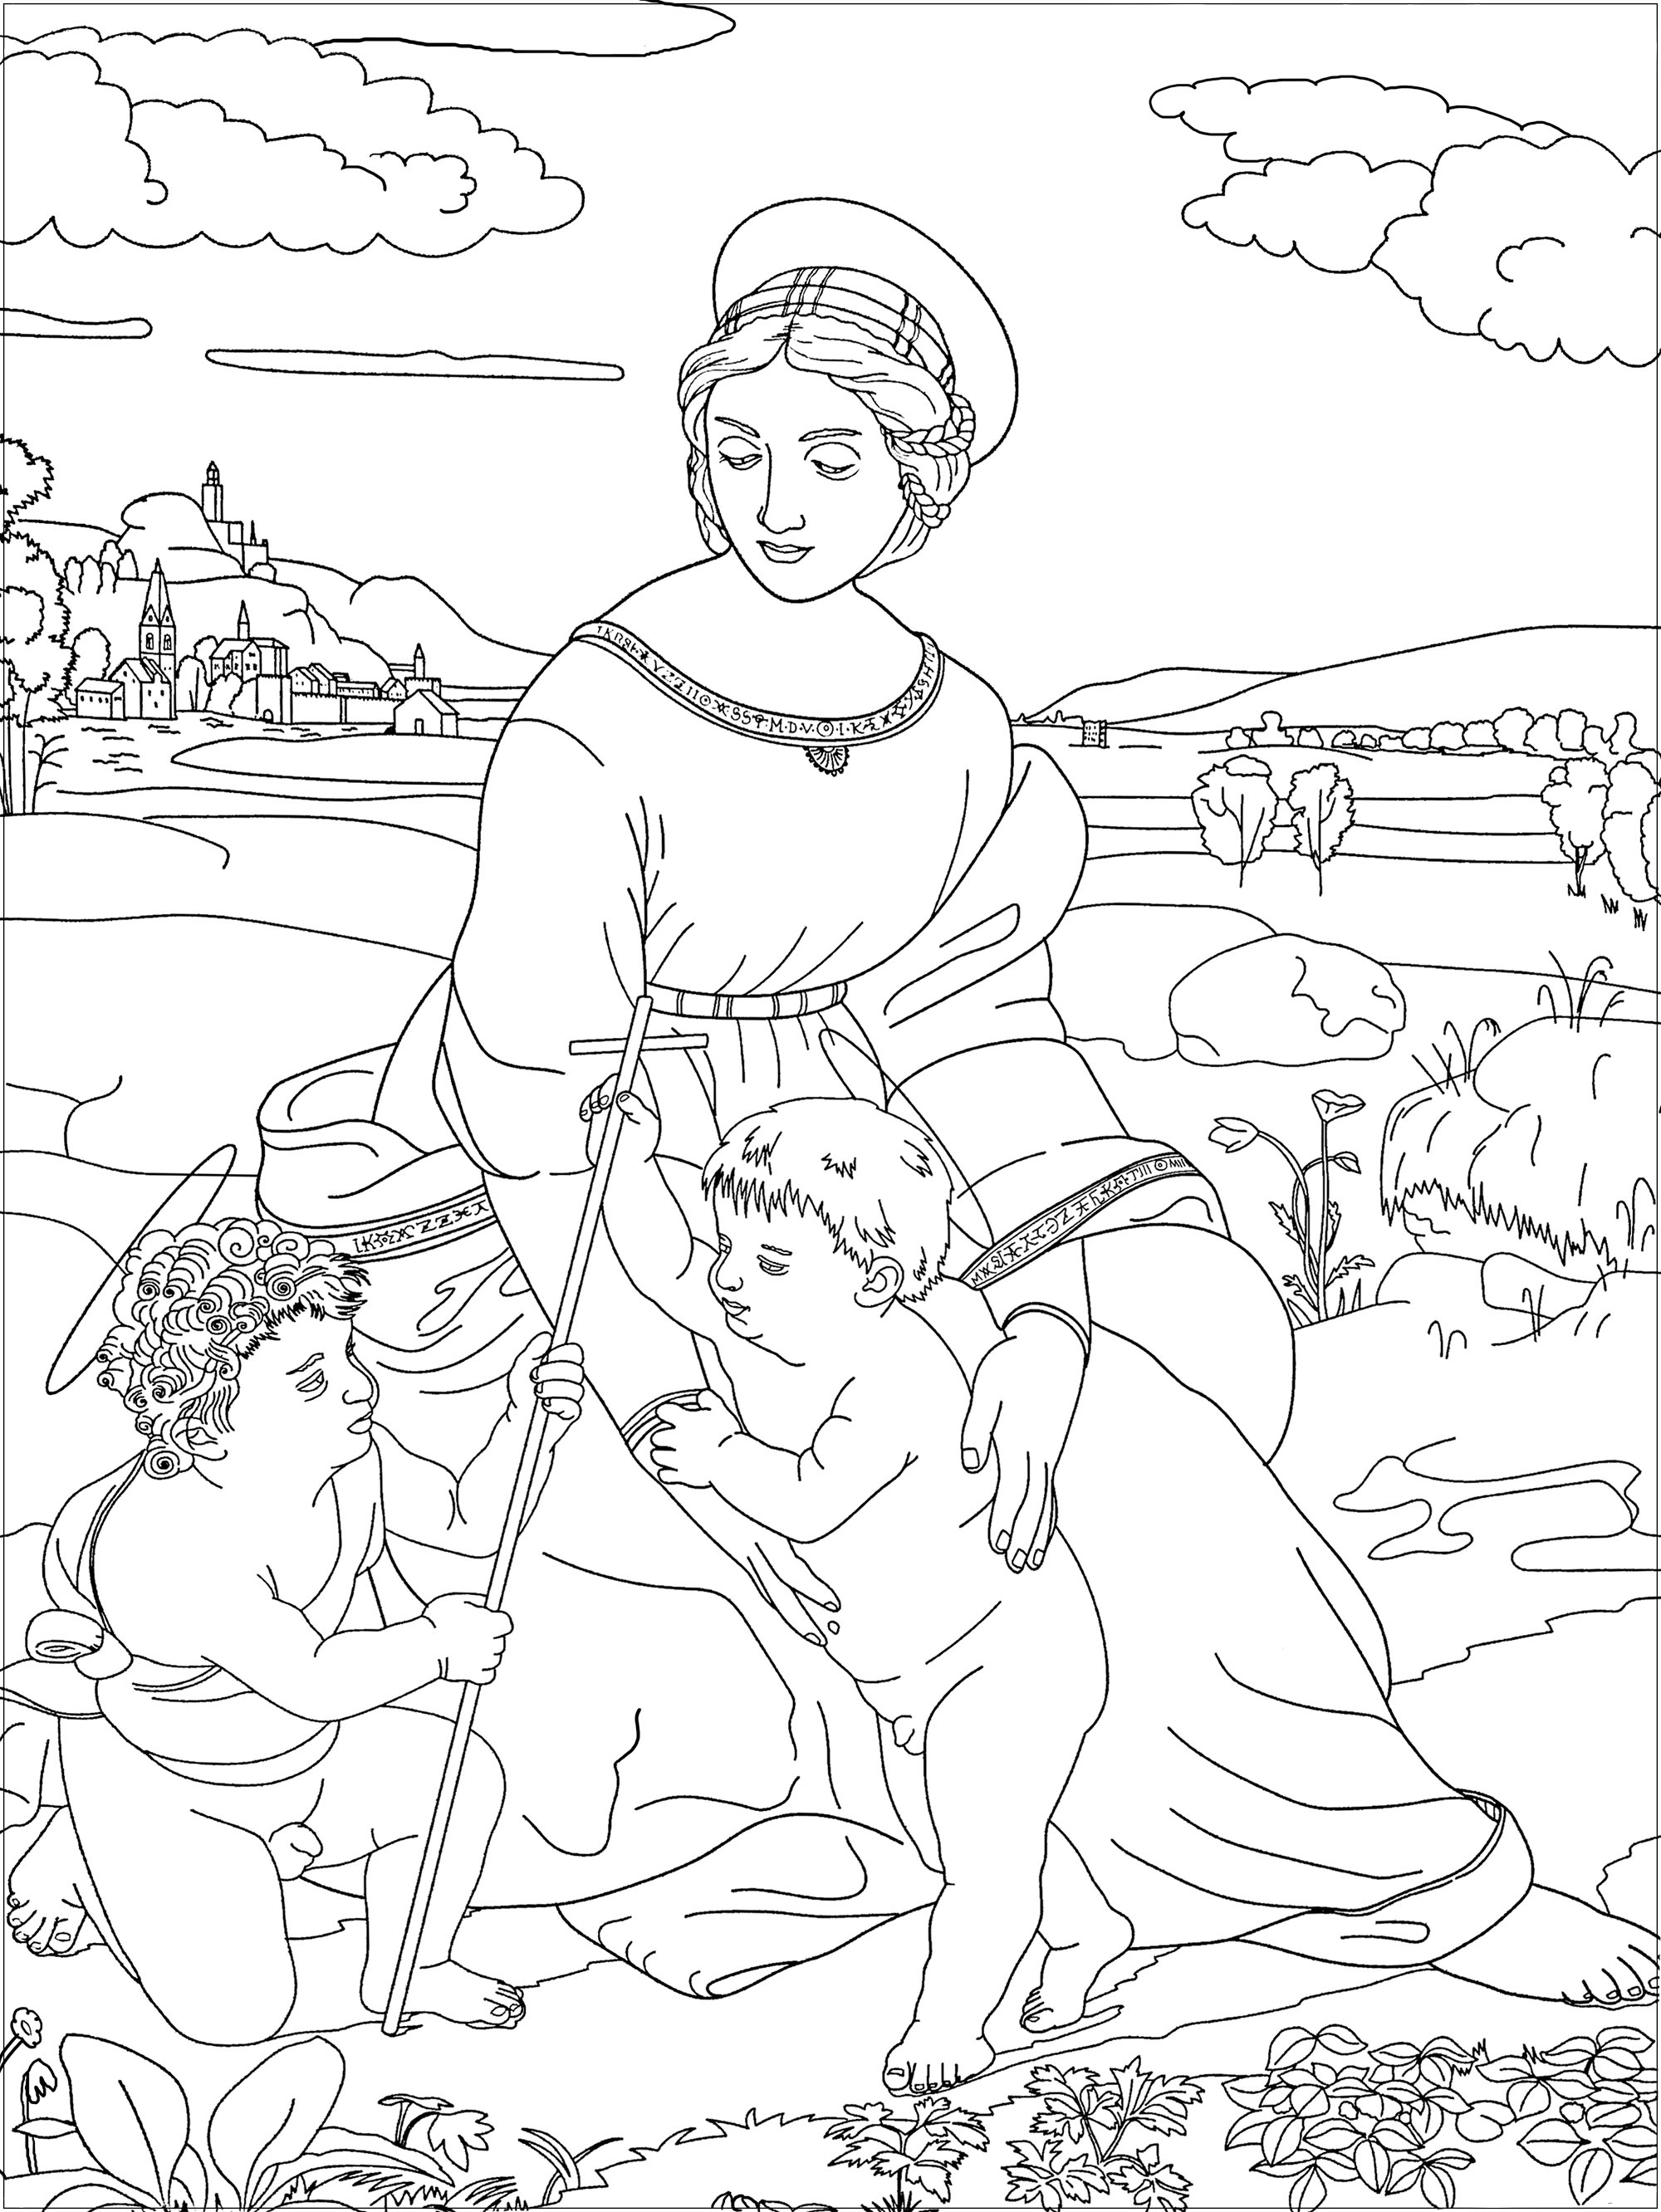 Página para colorear inspirada en una obra de Raphaël : Madonna de la Pradera